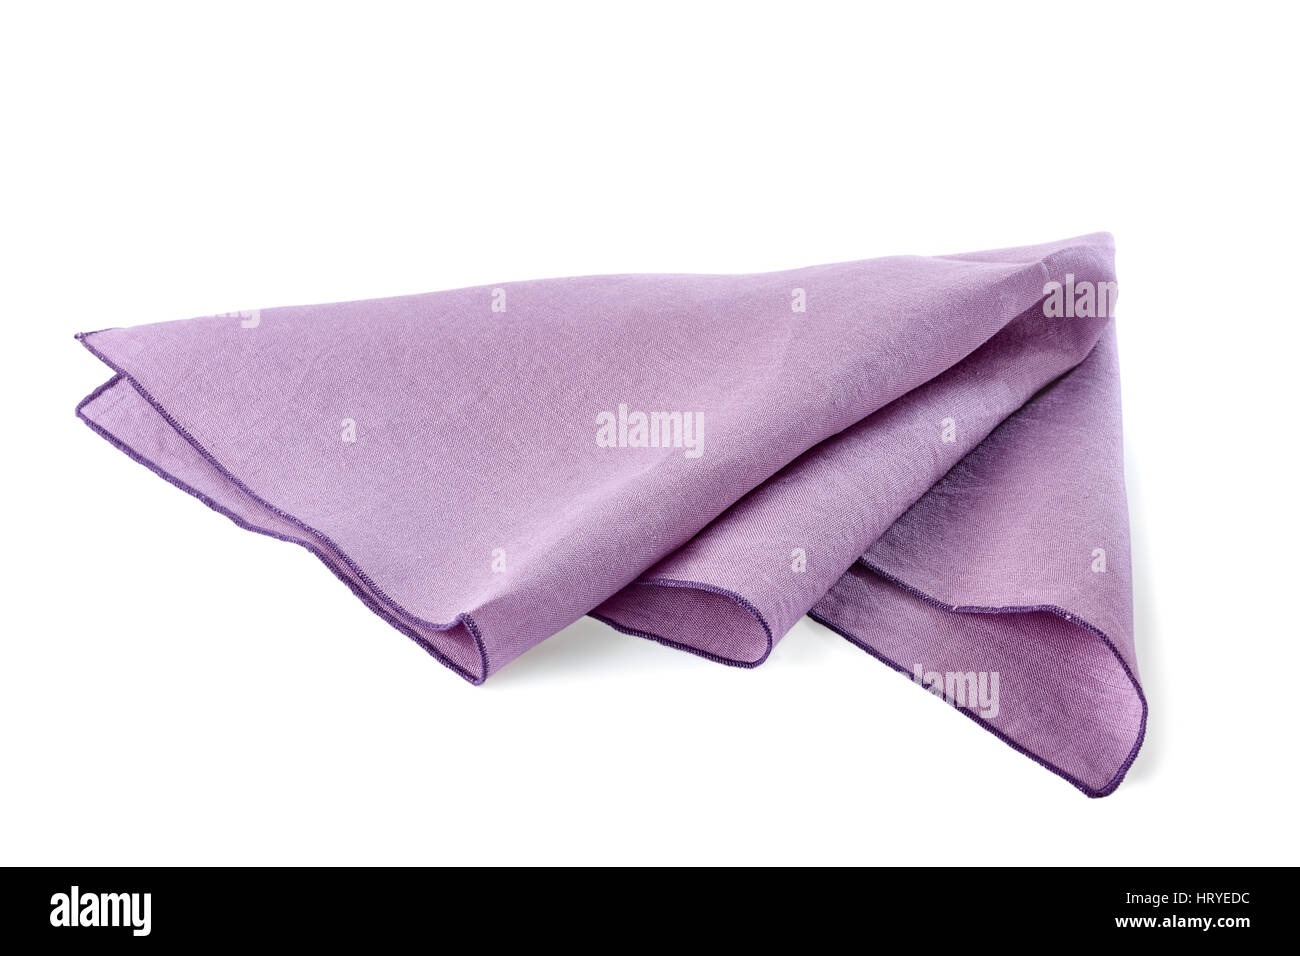 Crumpled violet textile napkin on white Stock Photo